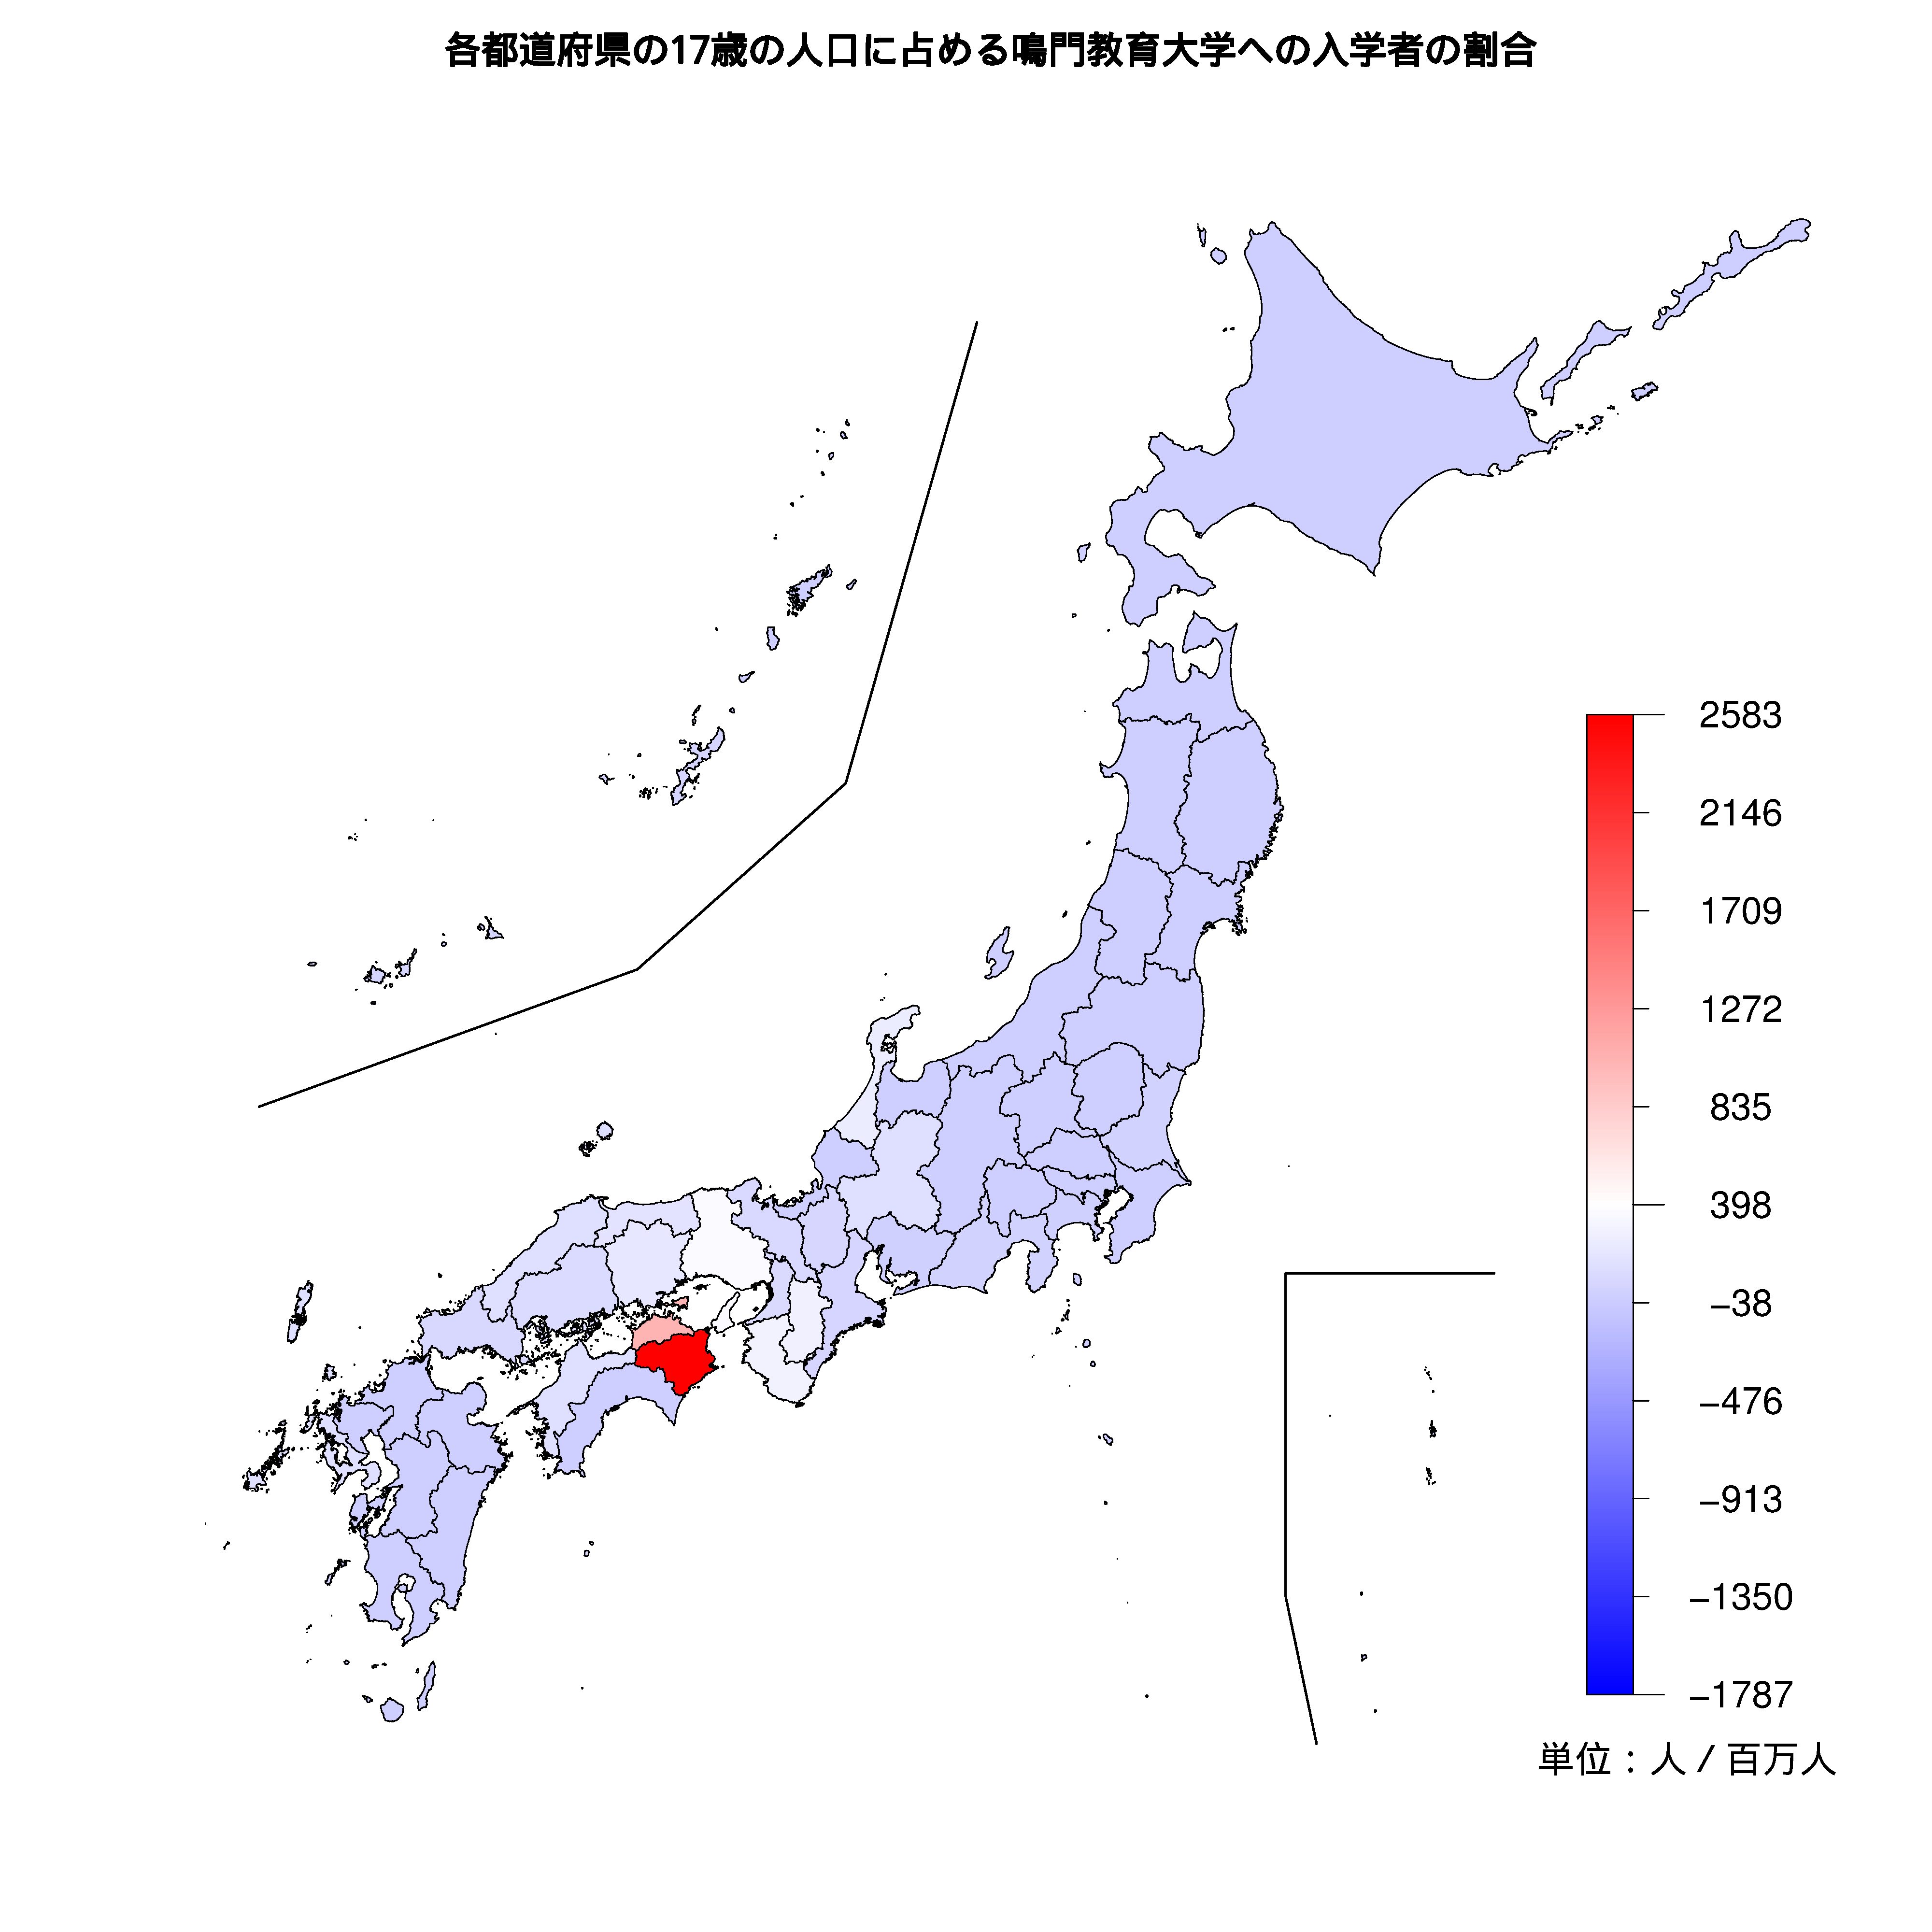 鳴門教育大学への入学者が多い都道府県の色分け地図